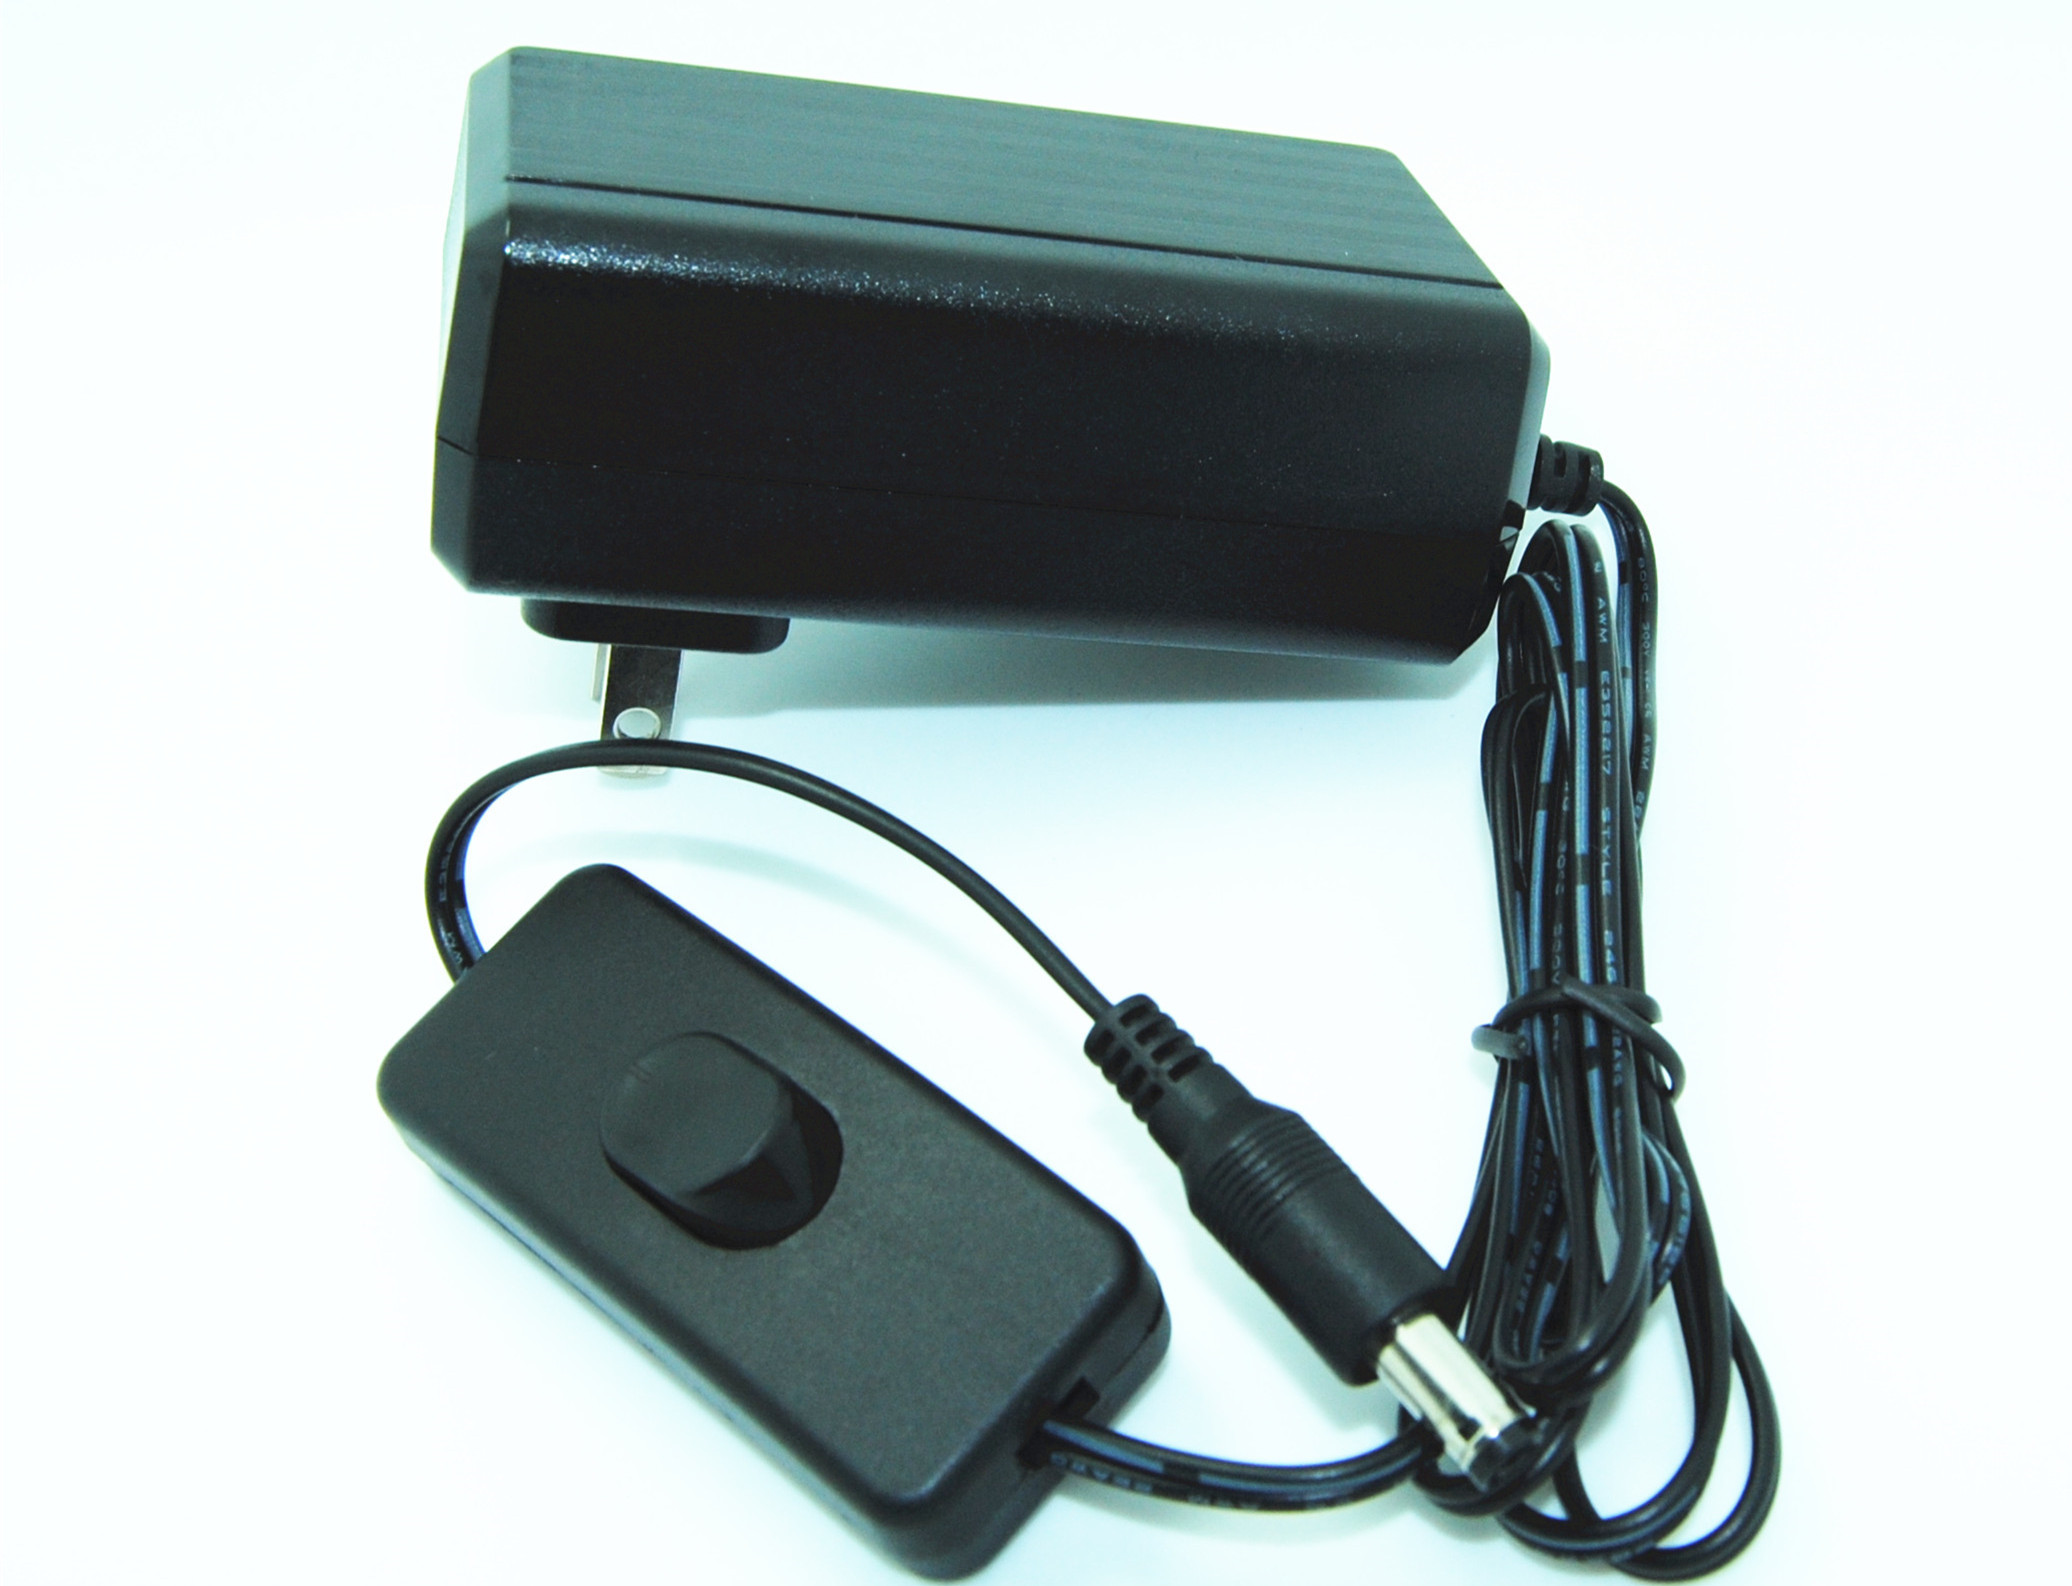 DC-Schaltnetzteil-Adapter Stifte des Amerikaners 2 für Überwachungskameras/Tablette PC